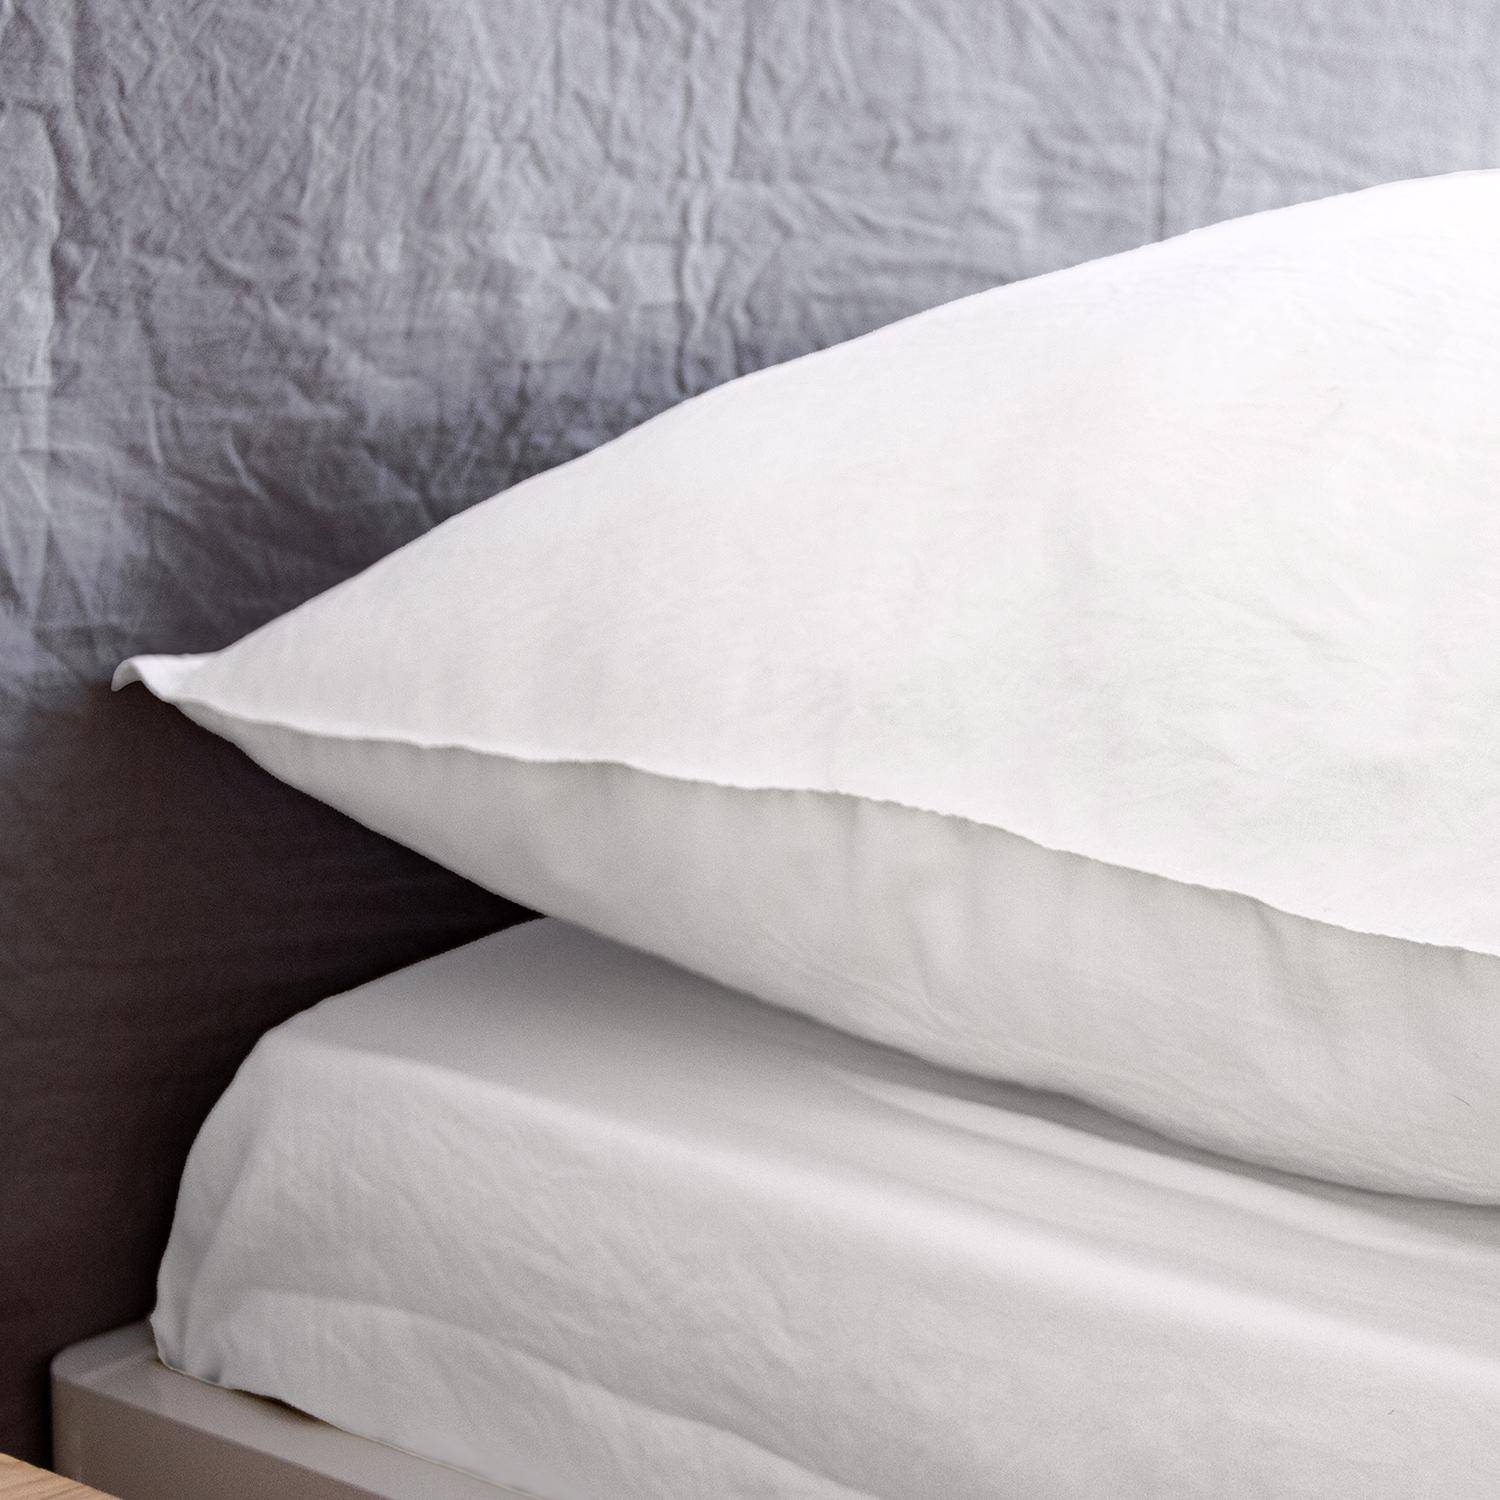 Bettwäsche-Set aus vorgewaschener Mikrofaser in weiß 240 x 220 cm für Doppelbetten, 1 Bettbezug und 2 Kissenbezüge Photo3